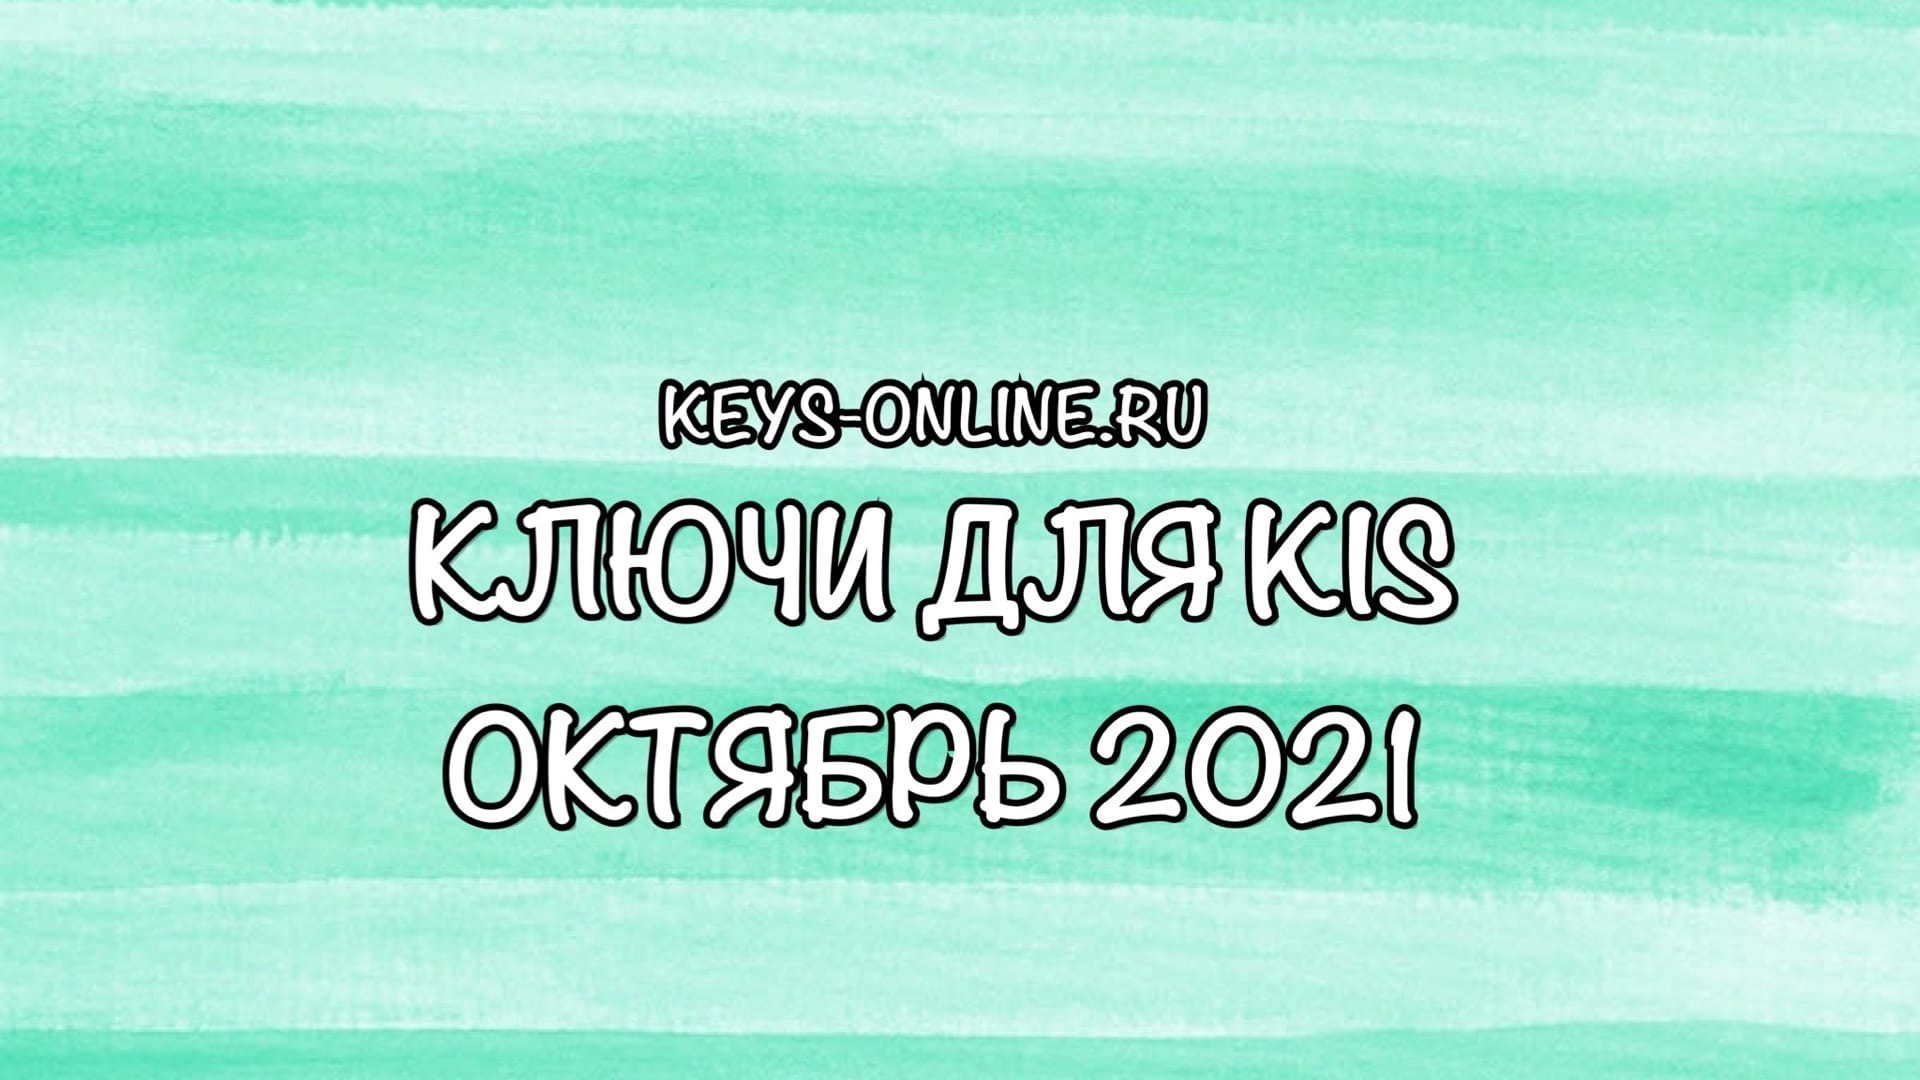 Ключи для KIS октябрь 2021